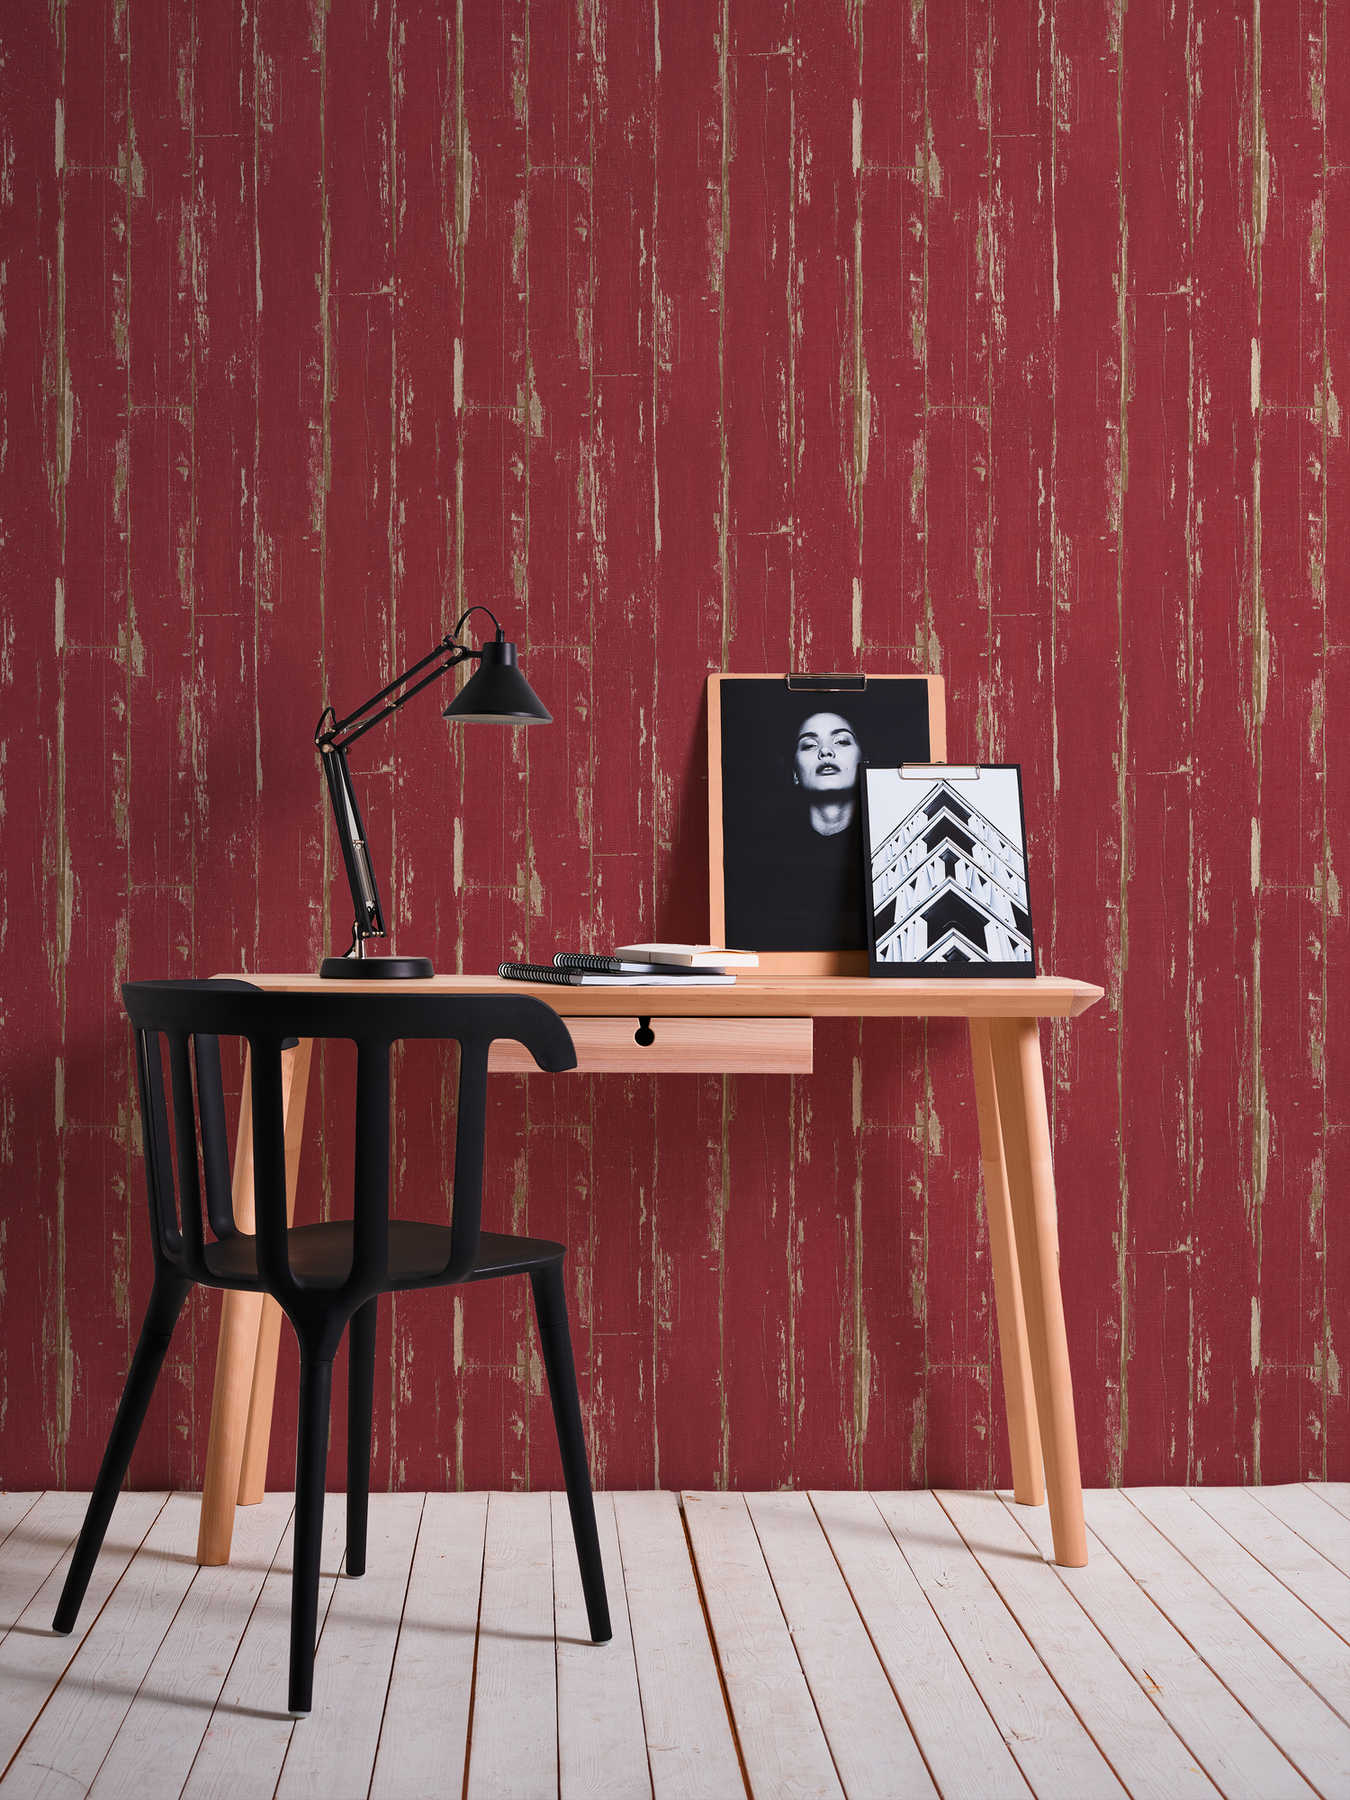             Papel pintado de madera con tablas, aspecto vintage y aspecto usado - rojo
        